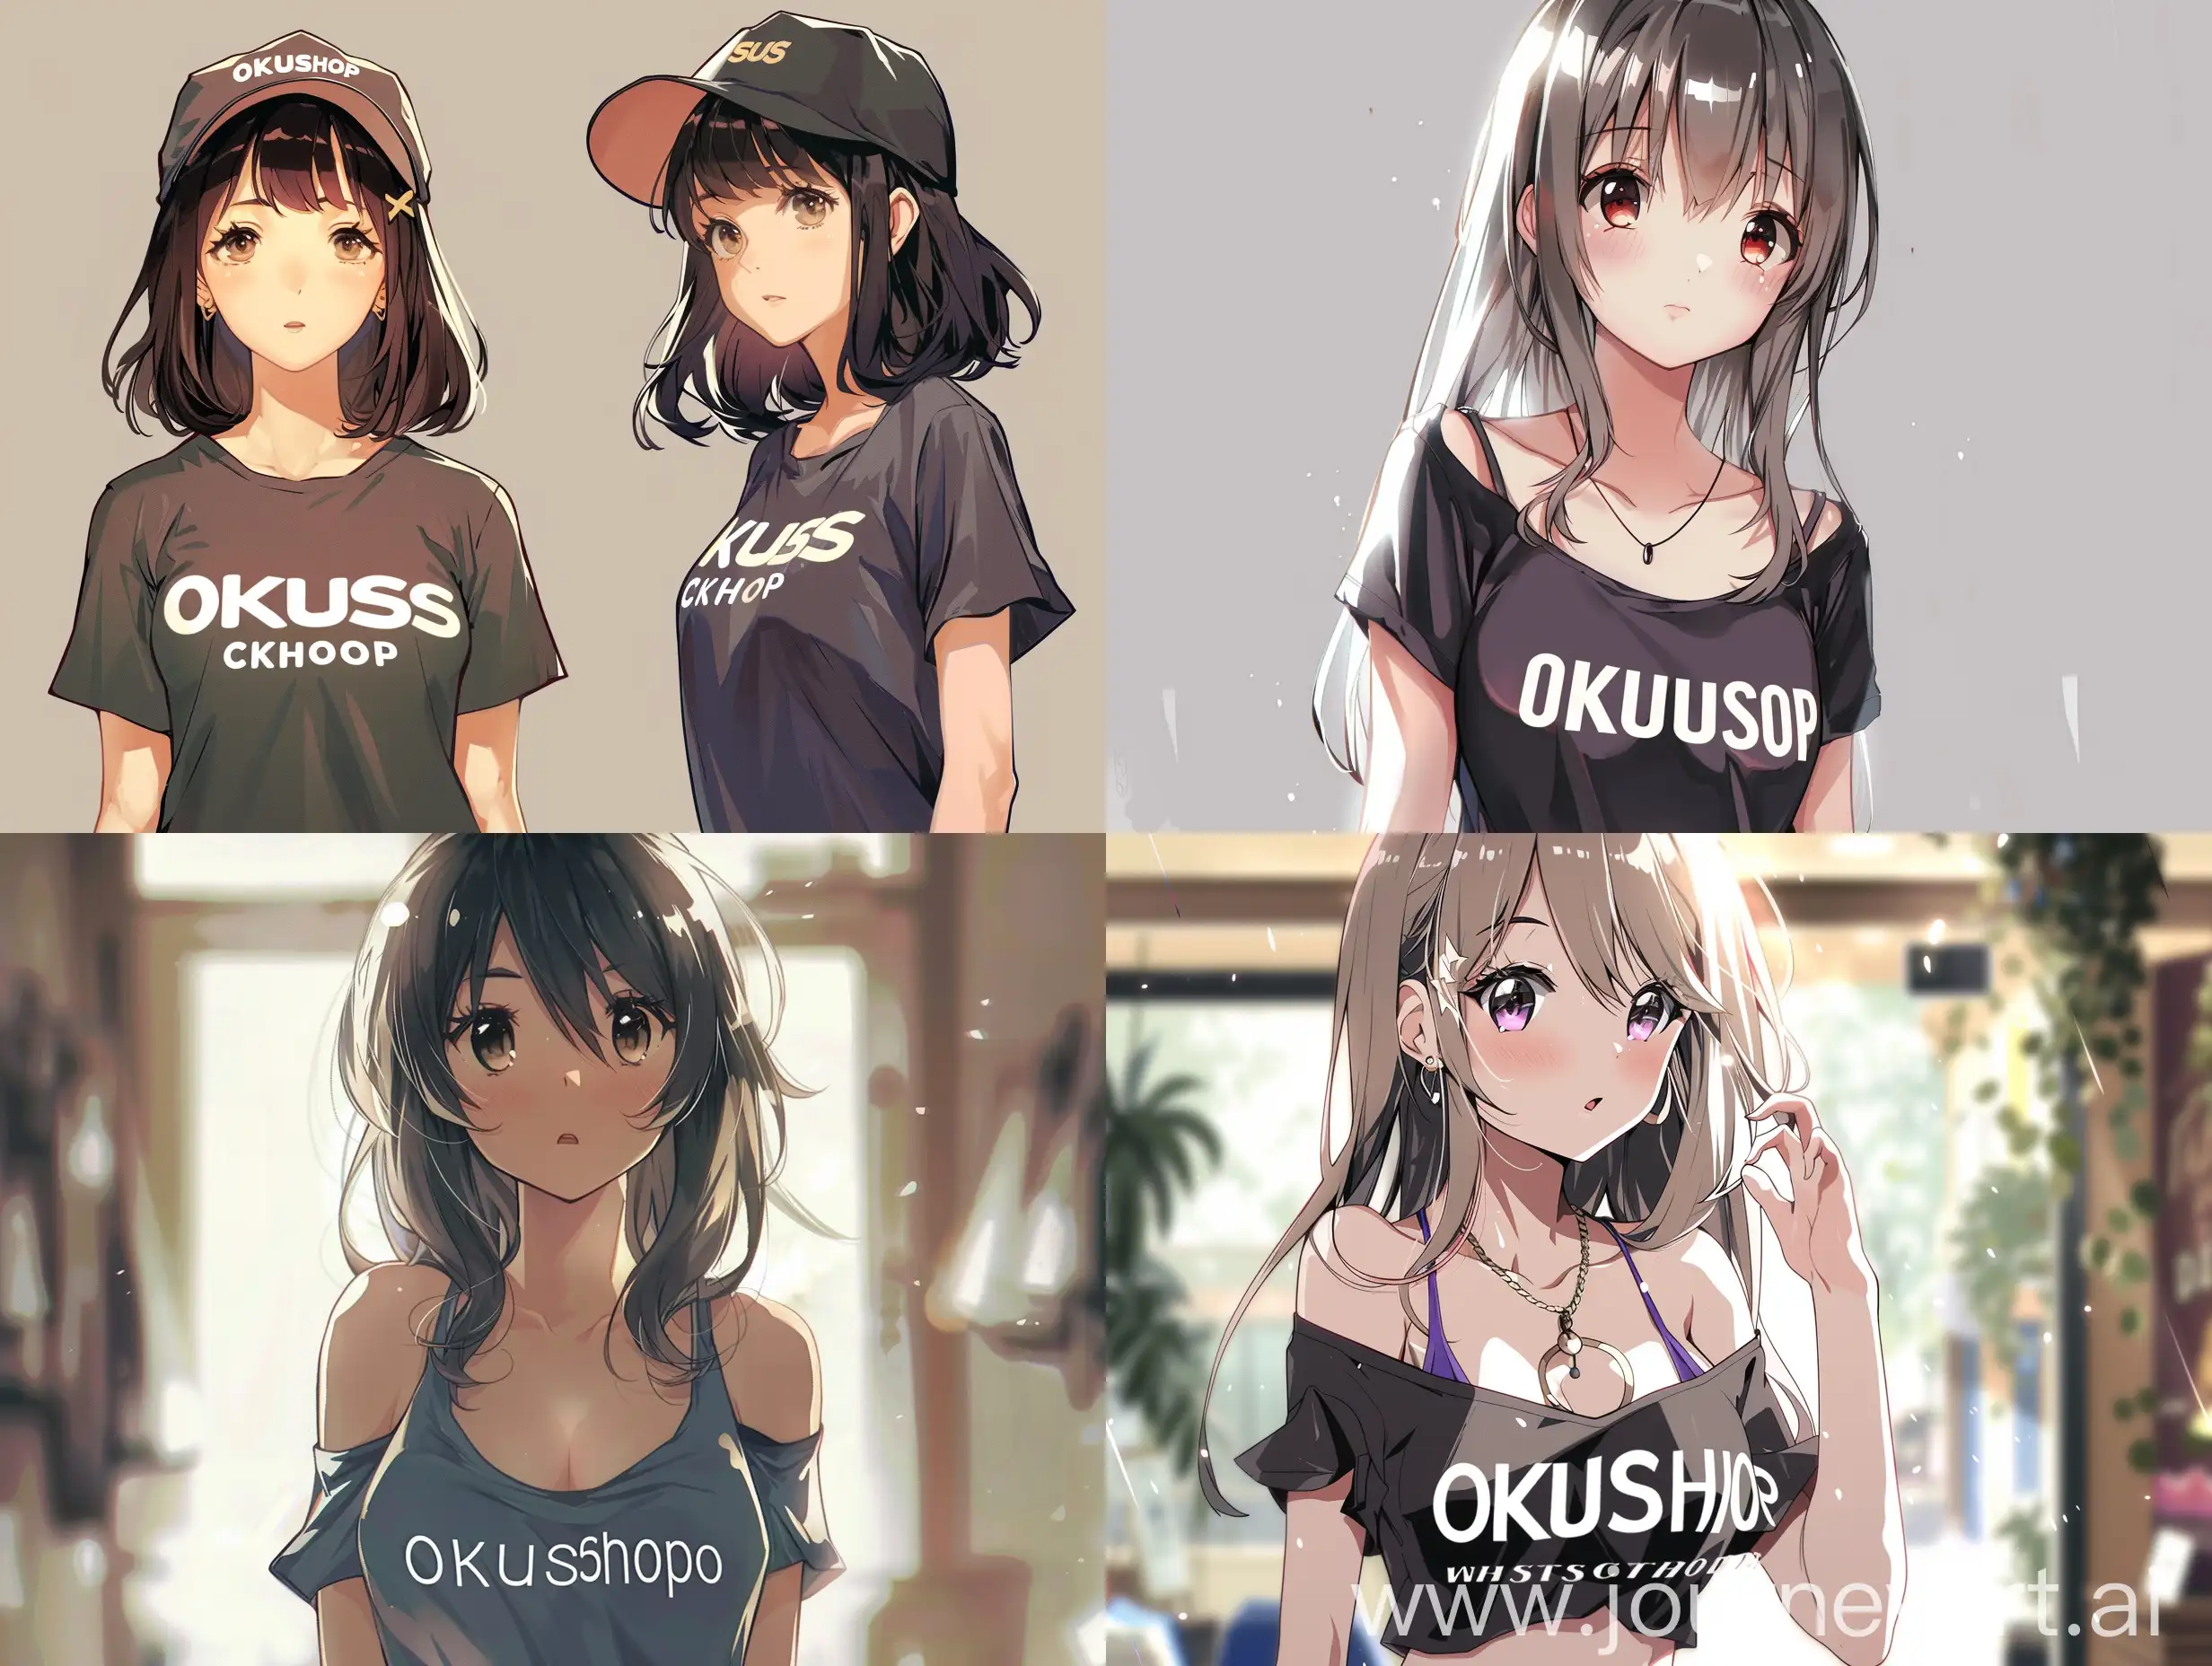 Красивая аниме девушка в модной майке, а надпись на майке OkusShop